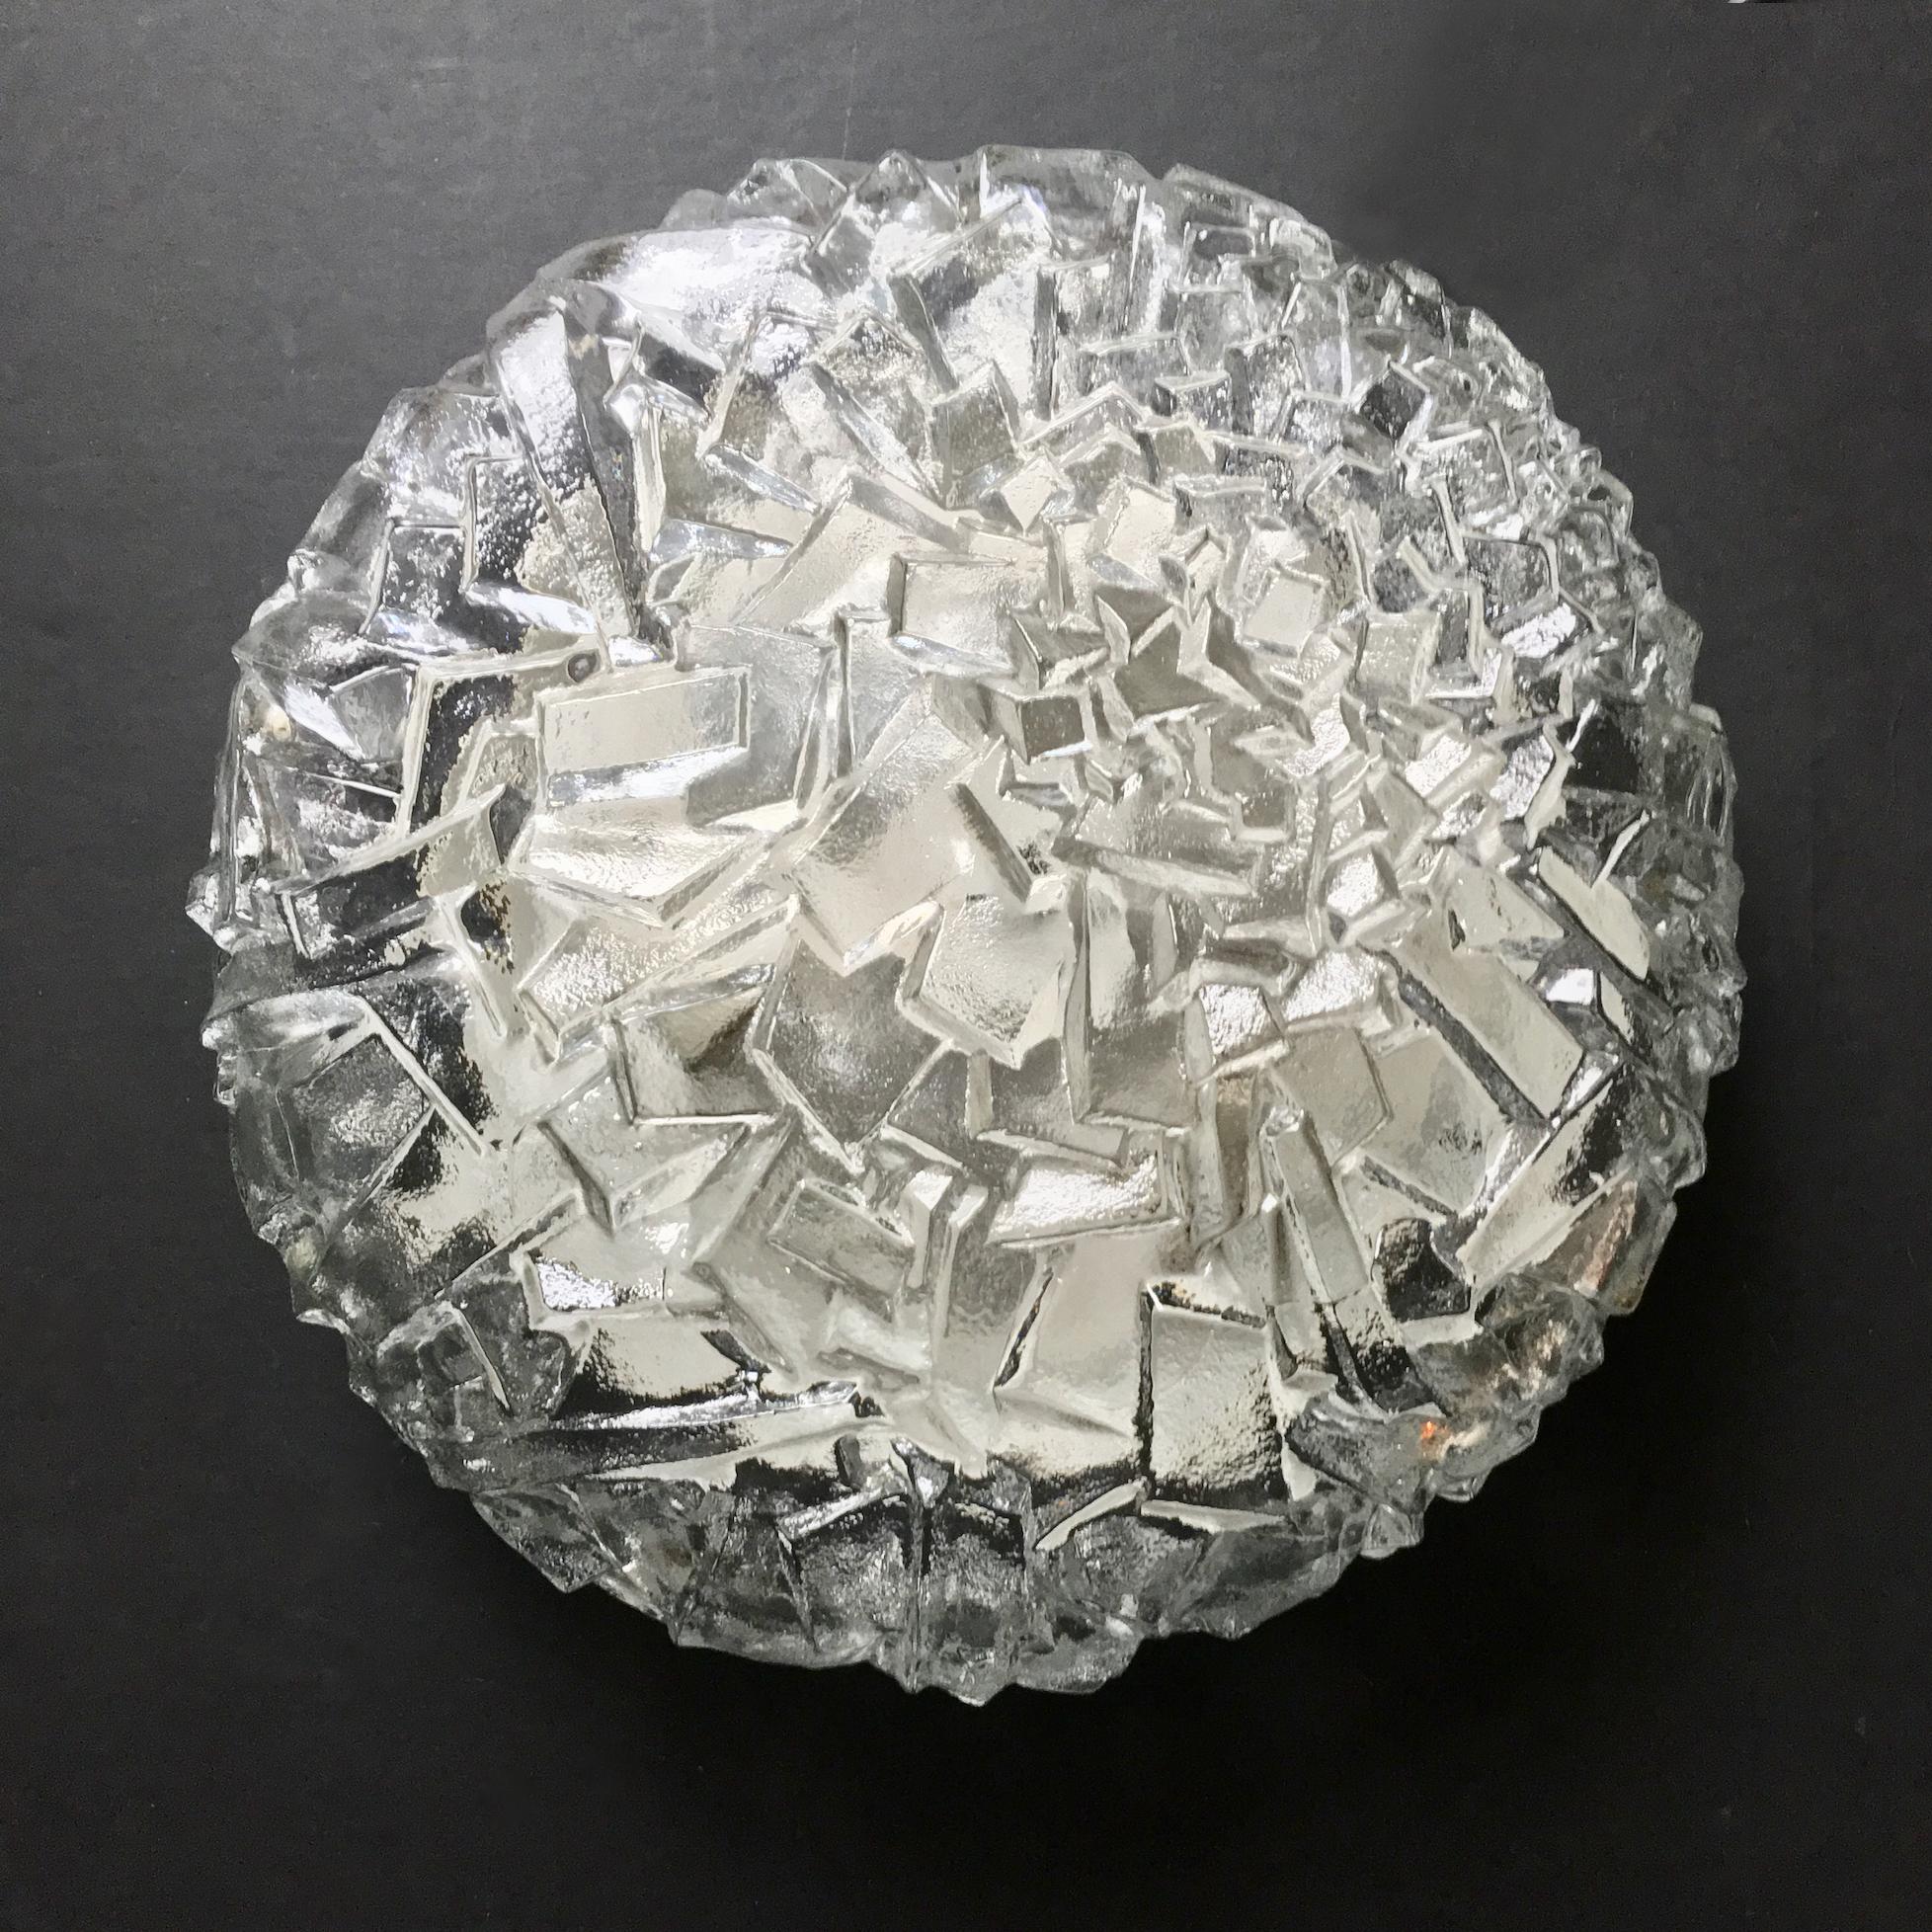 Lampe encastrée circulaire en verre avec motif de blocs de glace par Kaiser Leuchten, Allemagne, années 1970. 

L'abat-jour lourd est constitué d'une seule pièce de verre clair épais plié autour d'un cadre en métal blanc, maintenu en place par trois